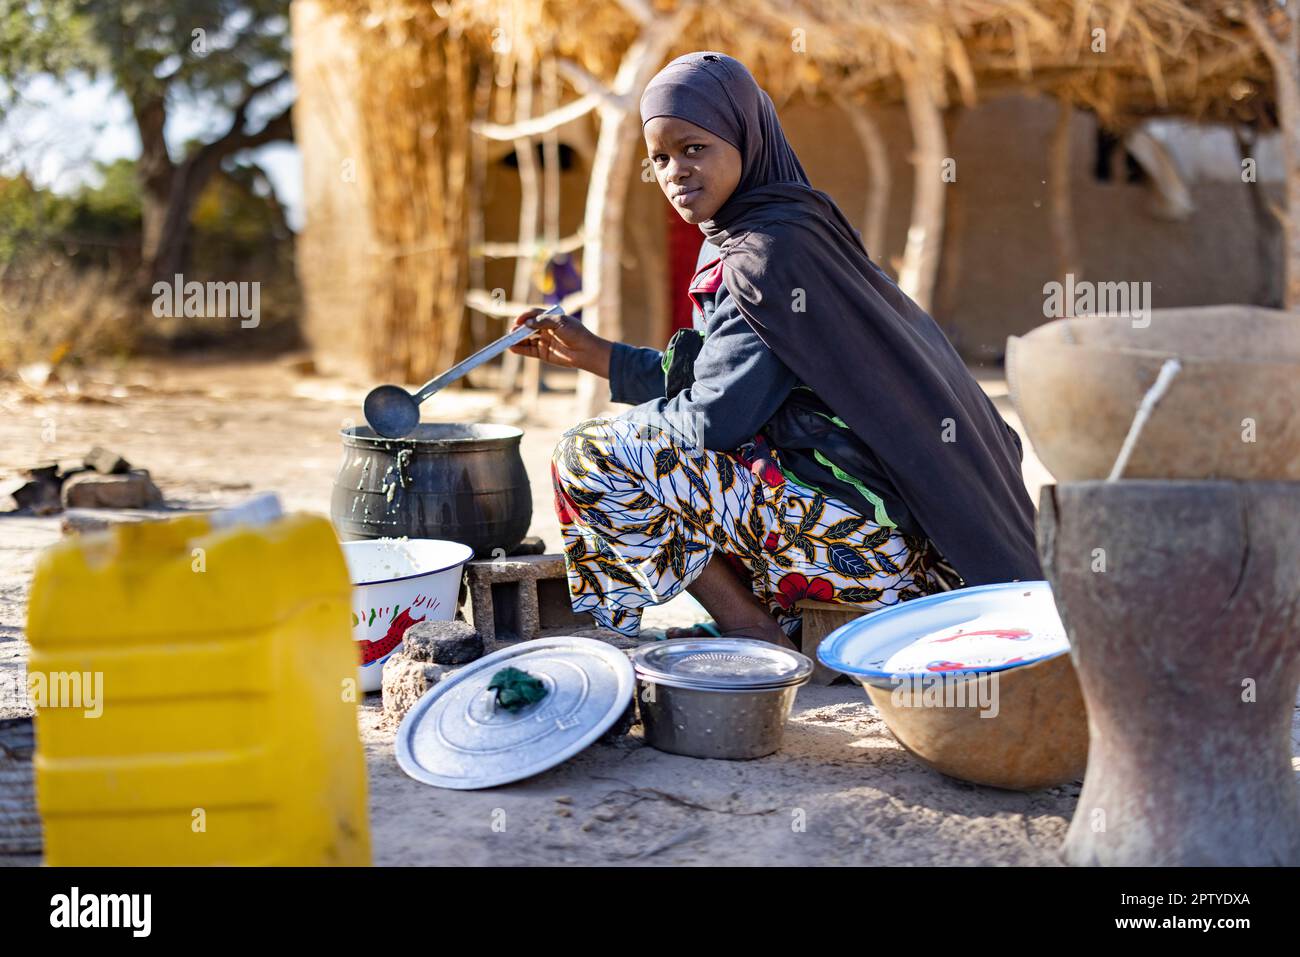 Eine junge Fulani-Flüchtlingsfrau, die aus dem Konflikt im Norden vertrieben wurde, kocht bei einem offenen Feuer in der Region Segou, Mali, Westafrika, Essen. 2022 Dürre und Hungerkrise in Mali. Stockfoto